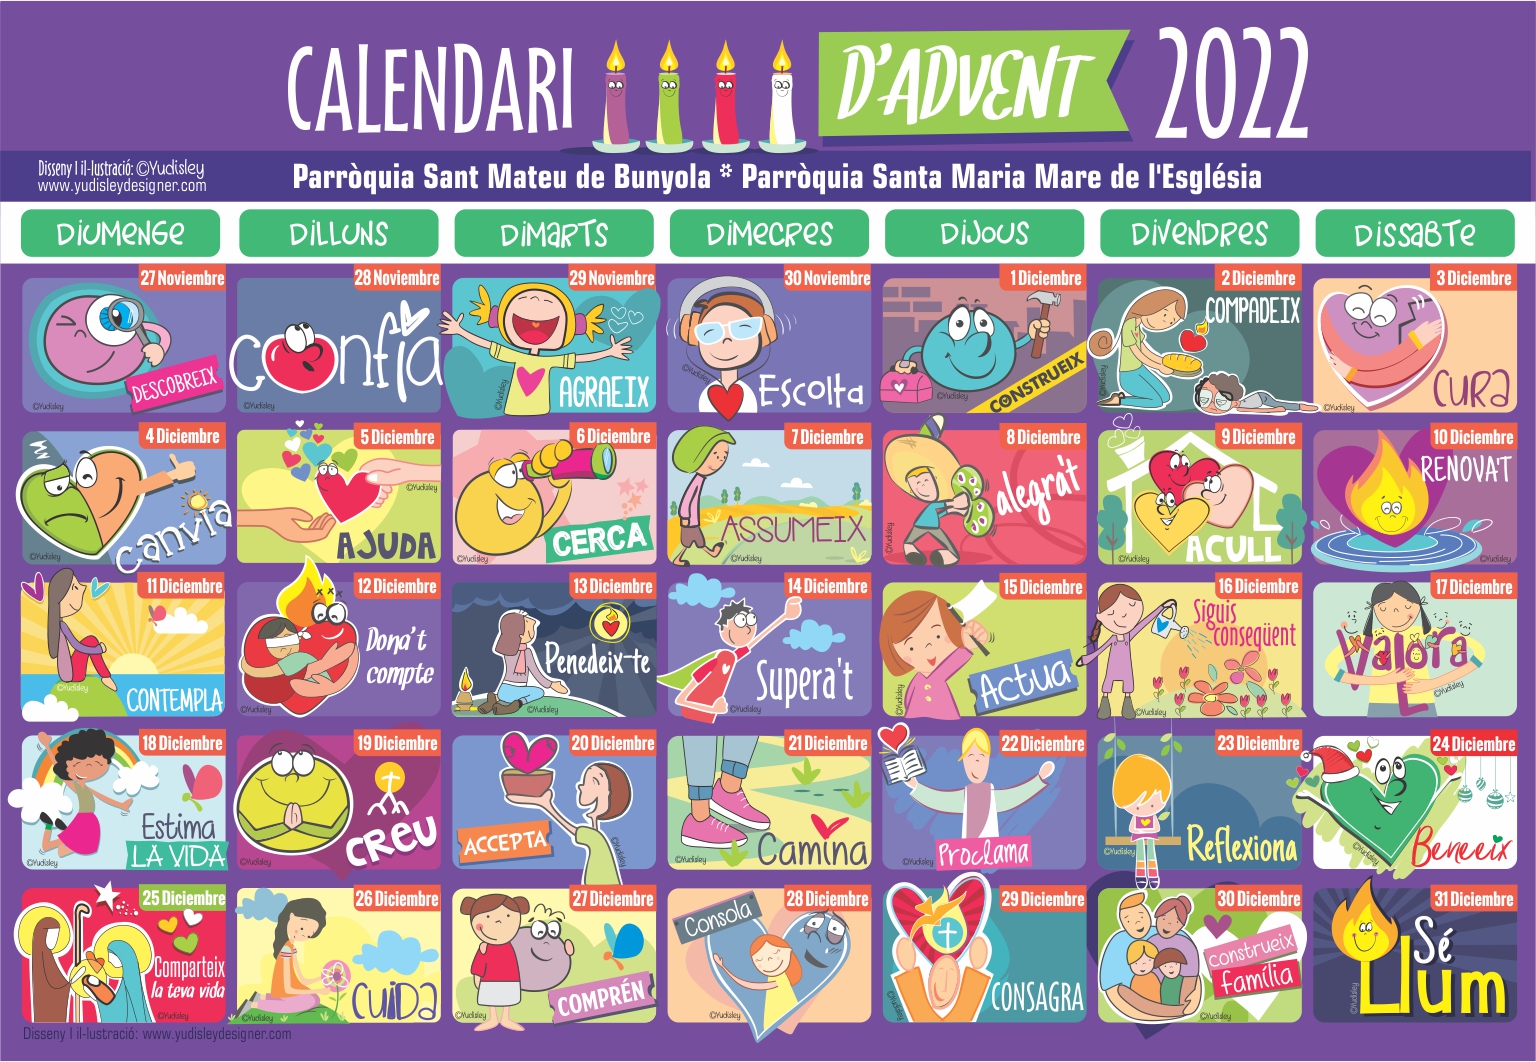 calendari-d-advent-2022-bisbat-de-mallorca